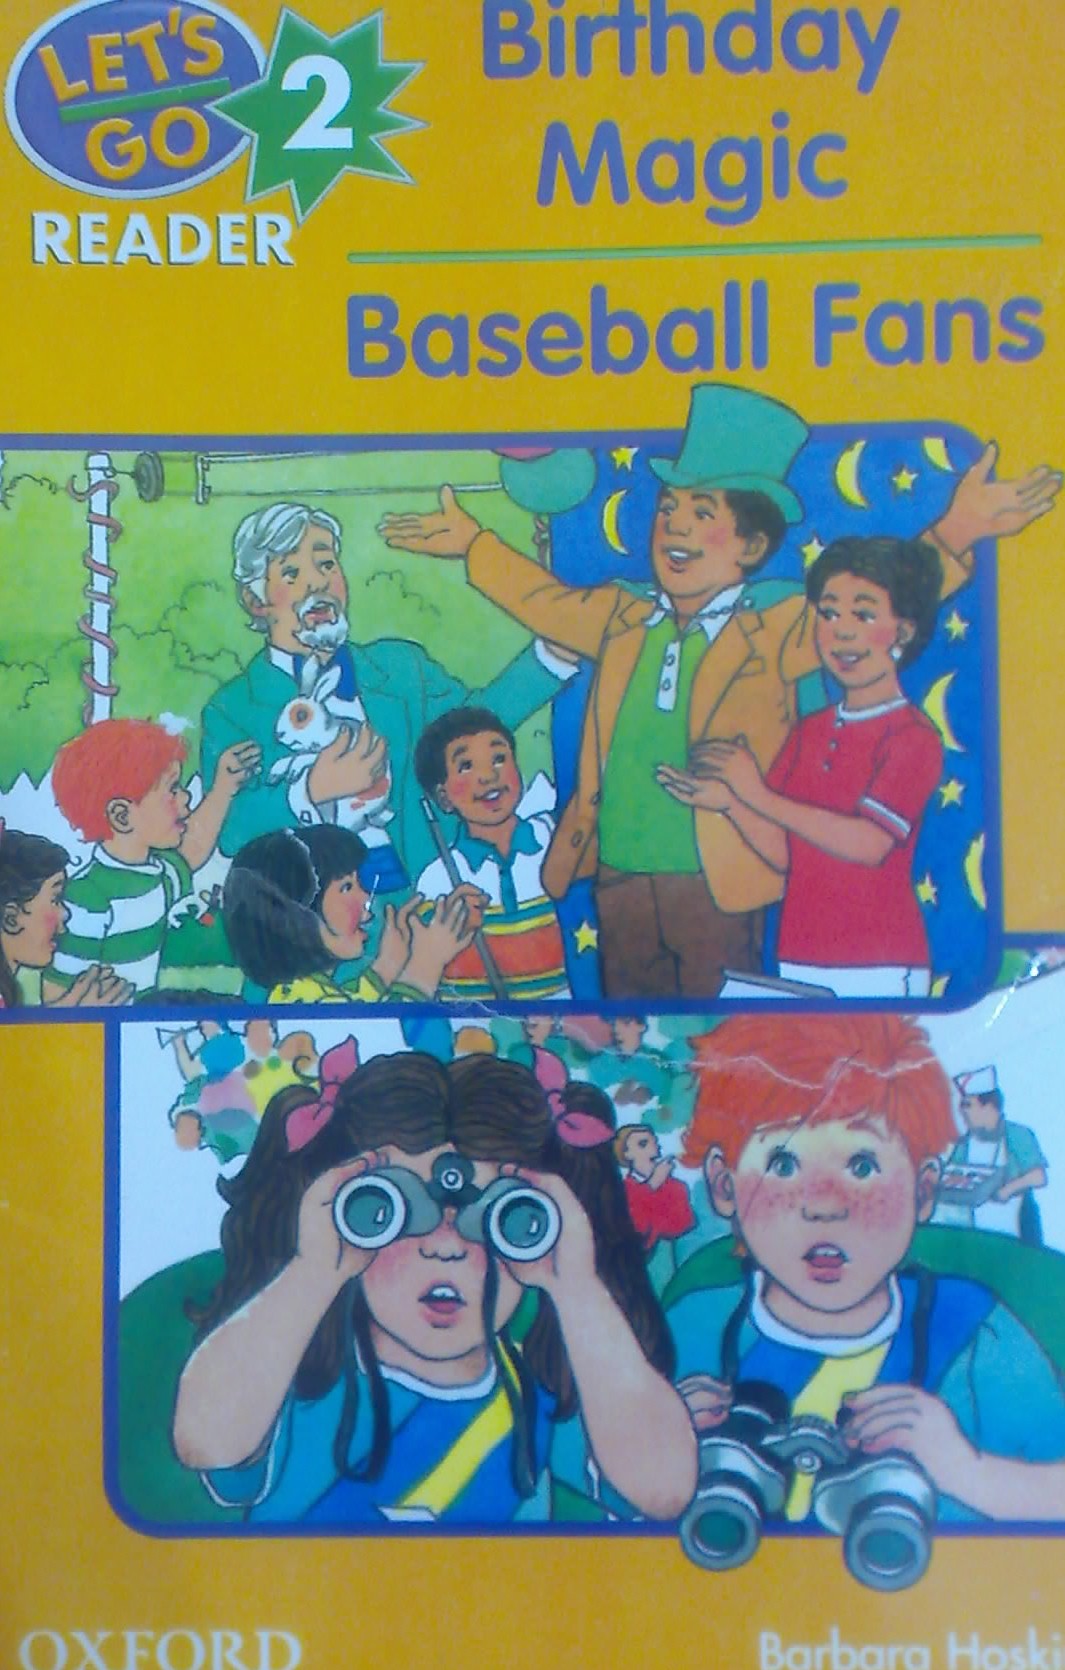 کتاب داستان انگلیسی birthday magic-baseball fans